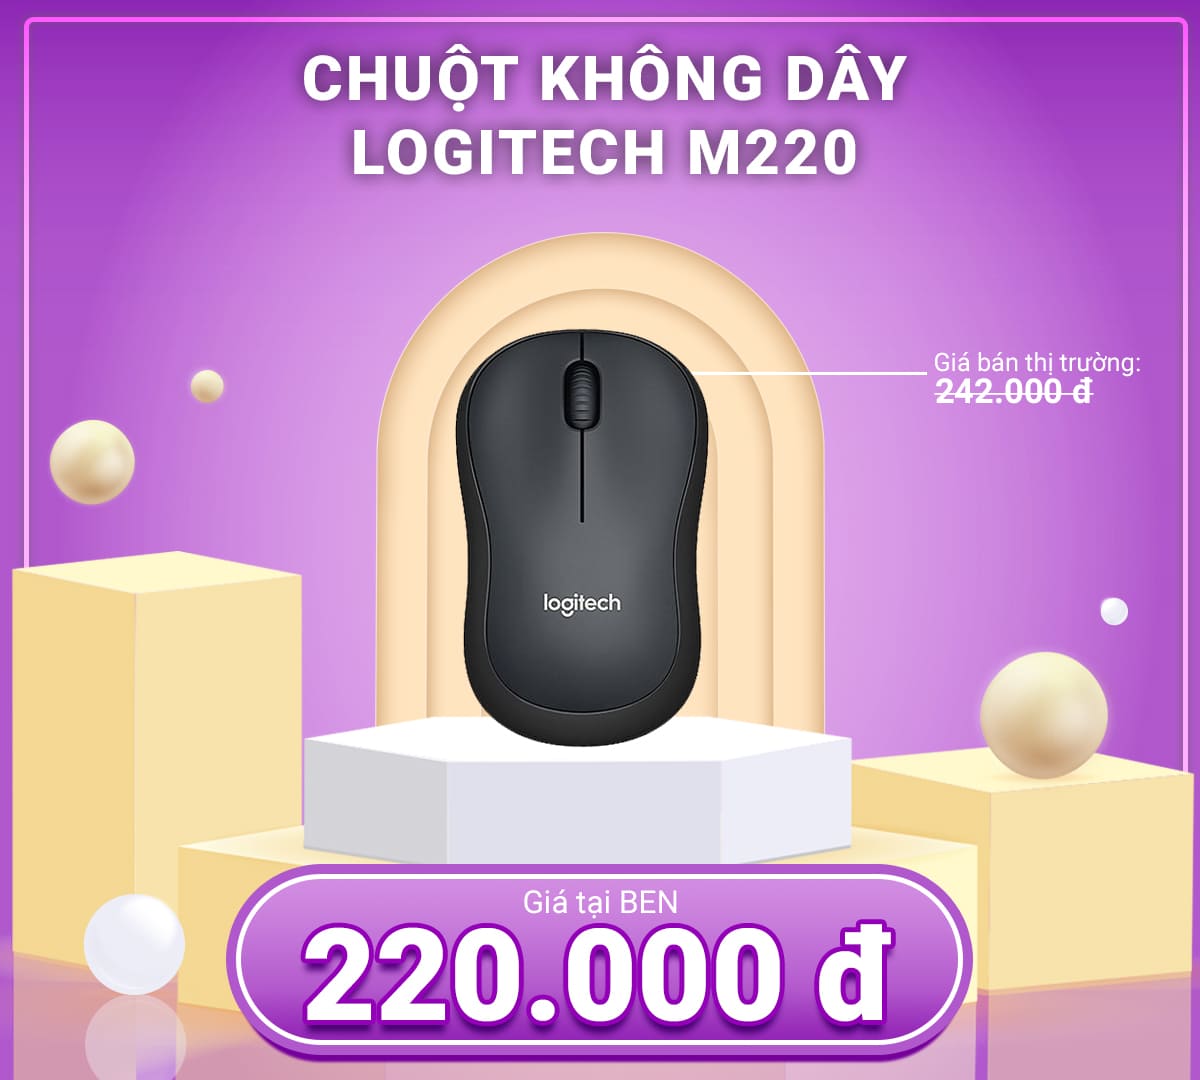 1200x1080 Chuot khong day